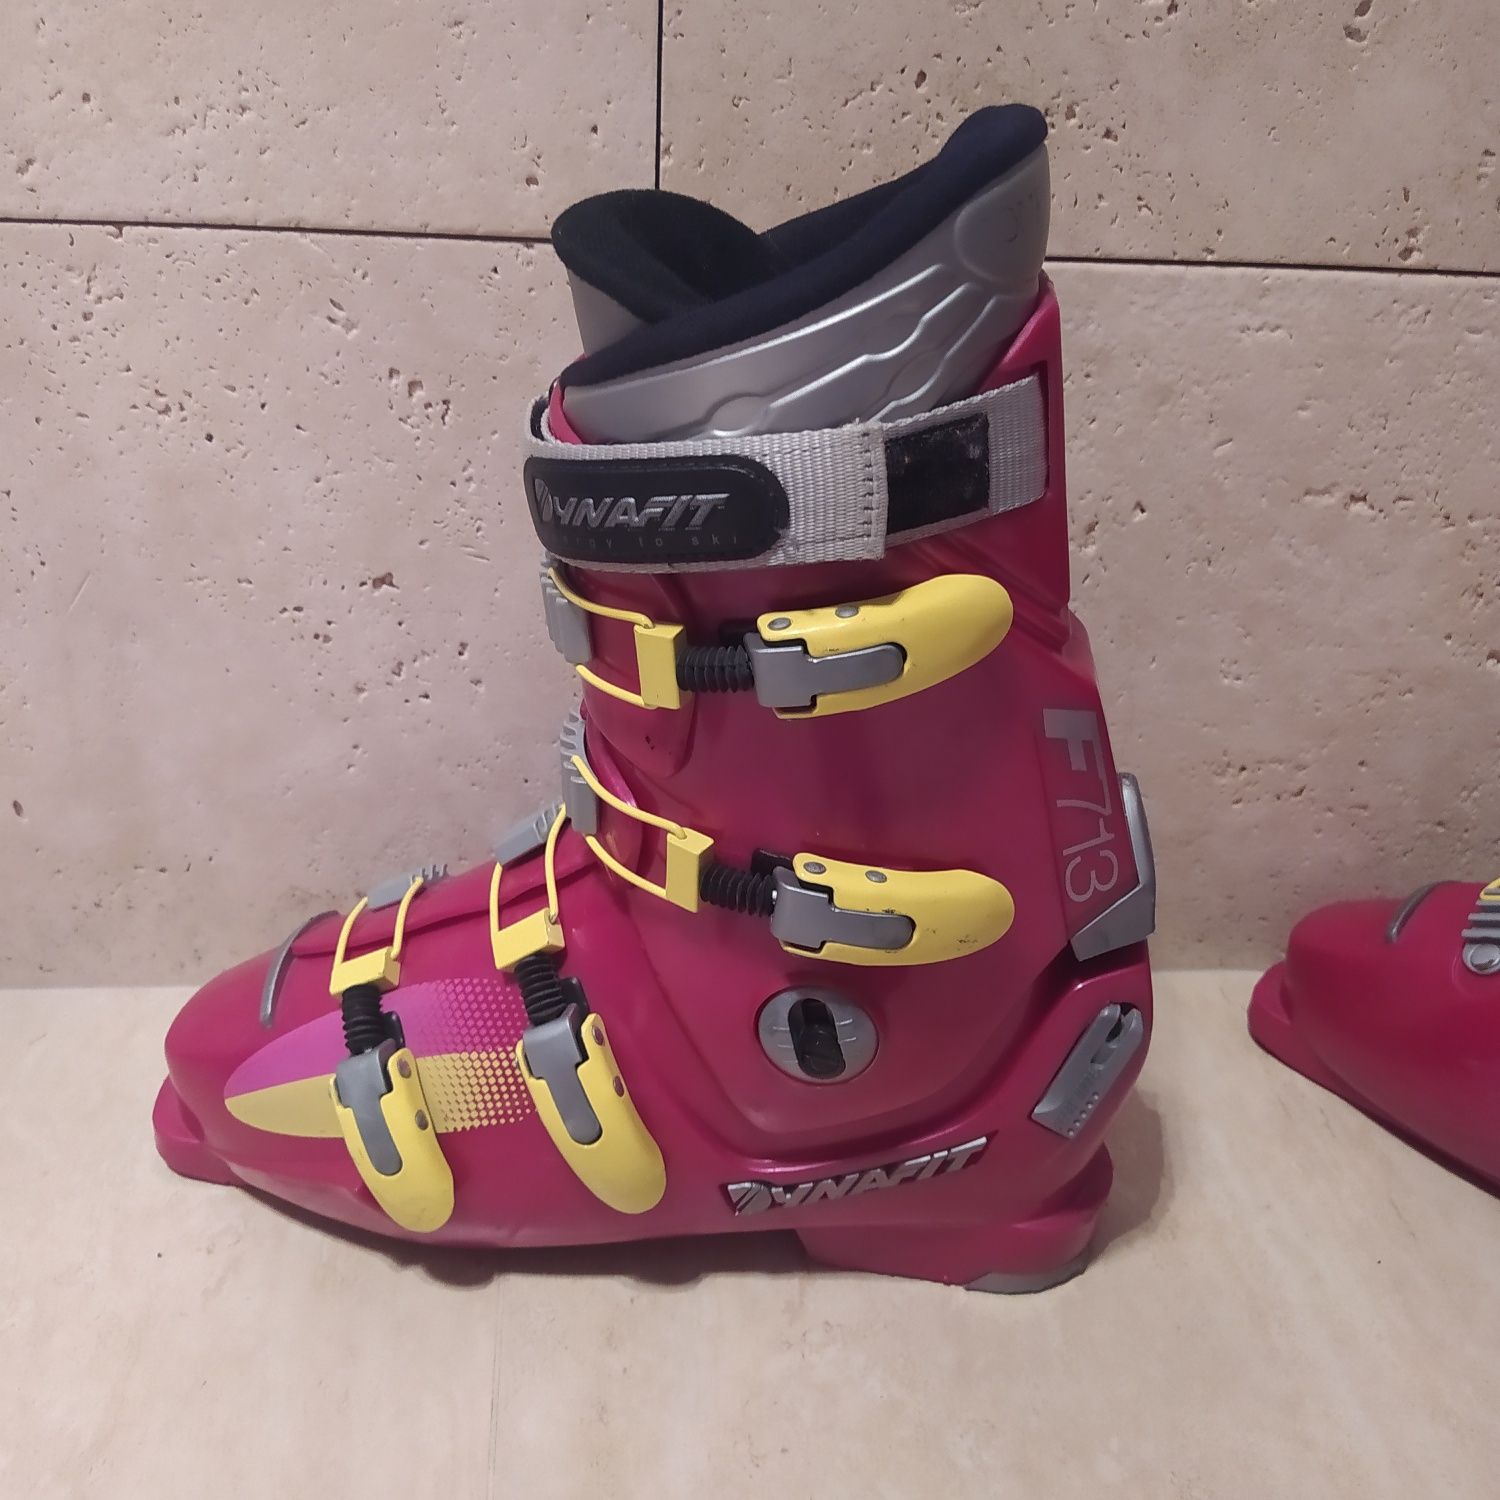 Buty narciarskie marki DYNAFIT. Długość wkładki 28 cm